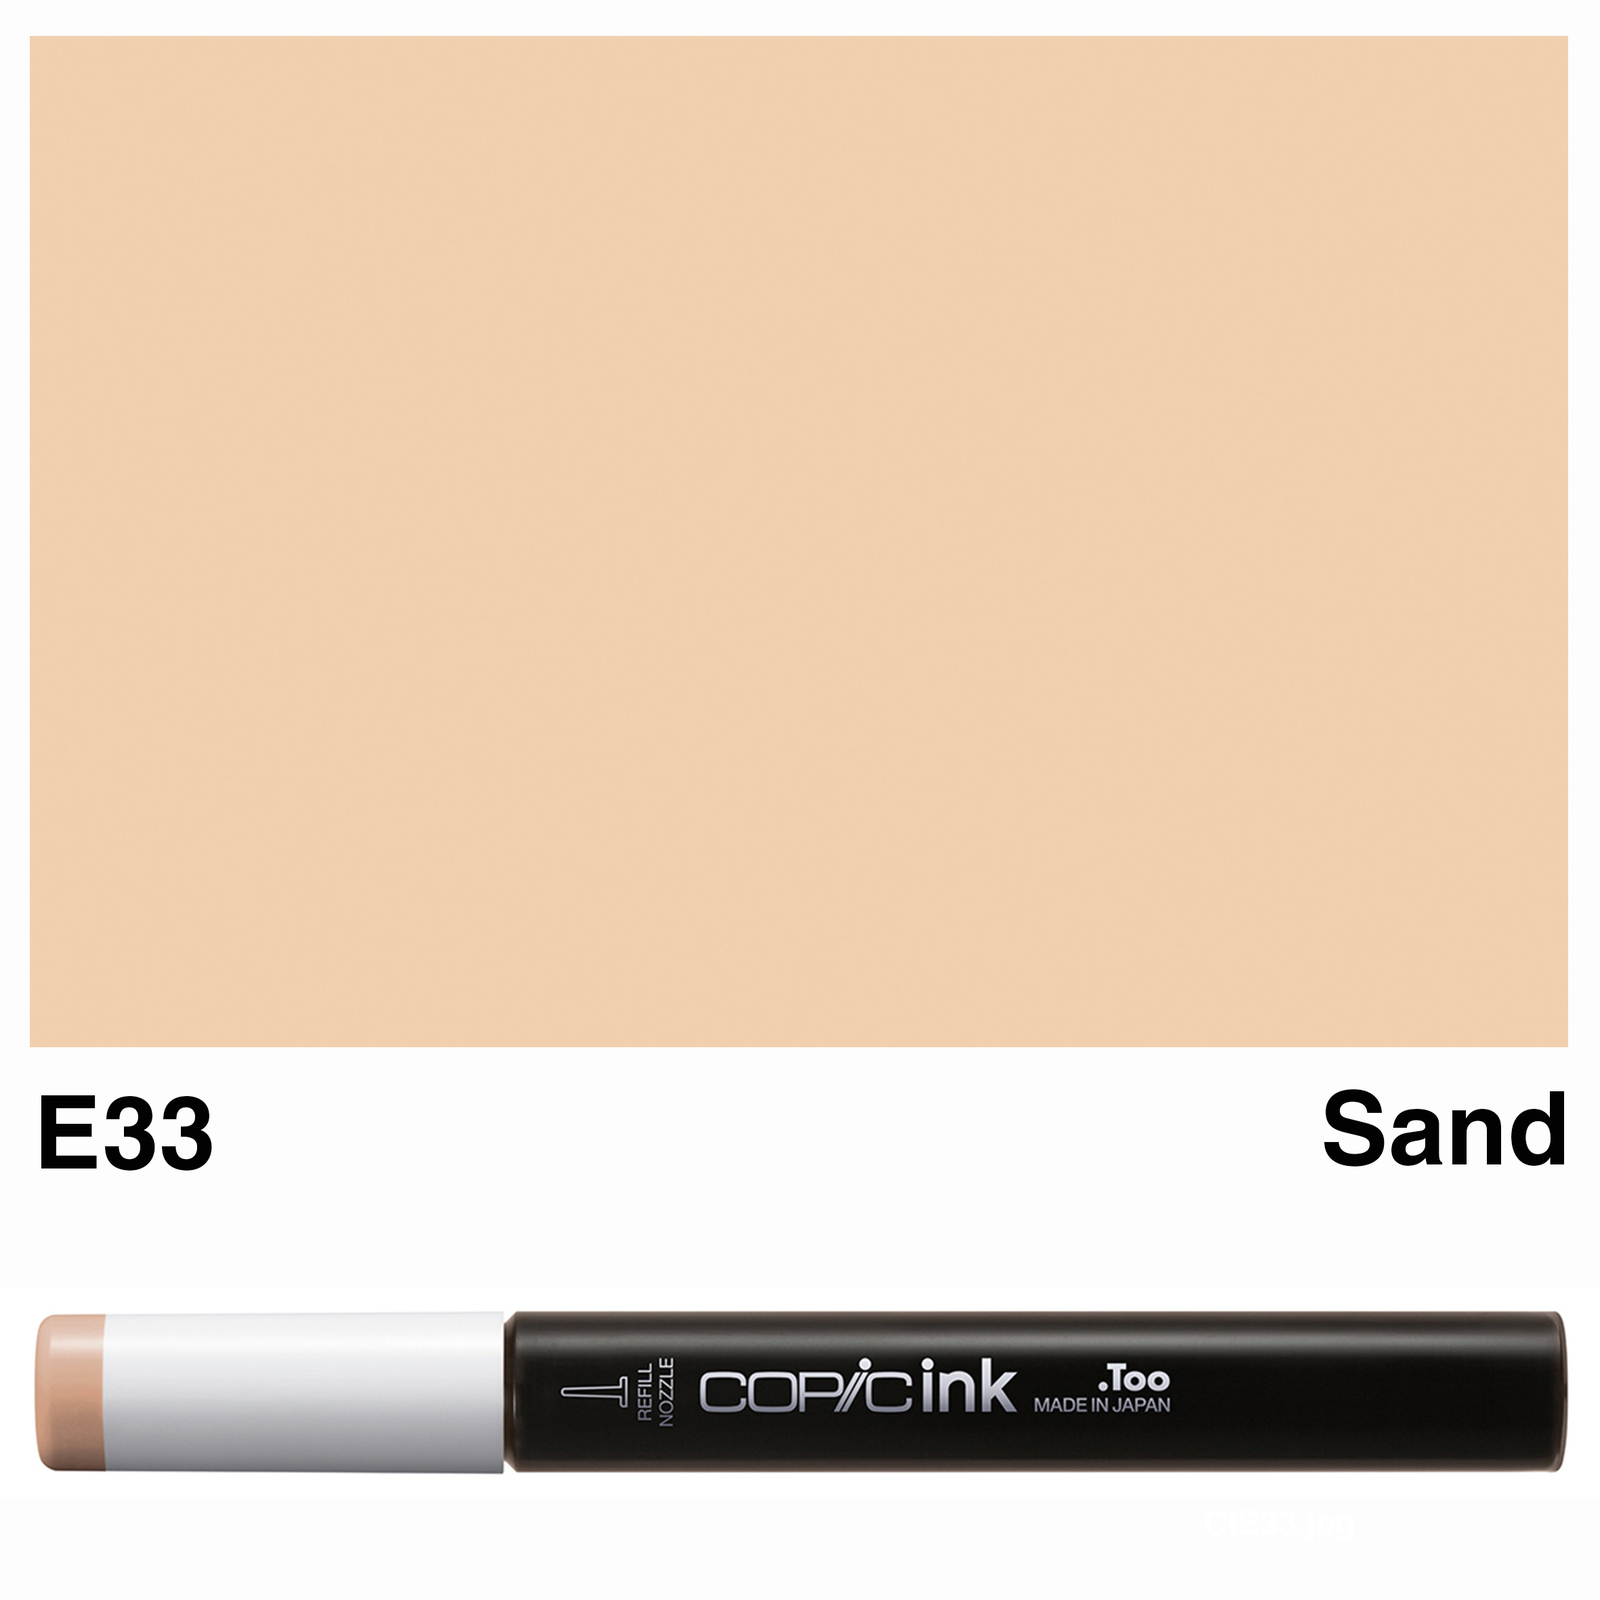 E33　(Refill)　12ml　Ink　Copic　Sand